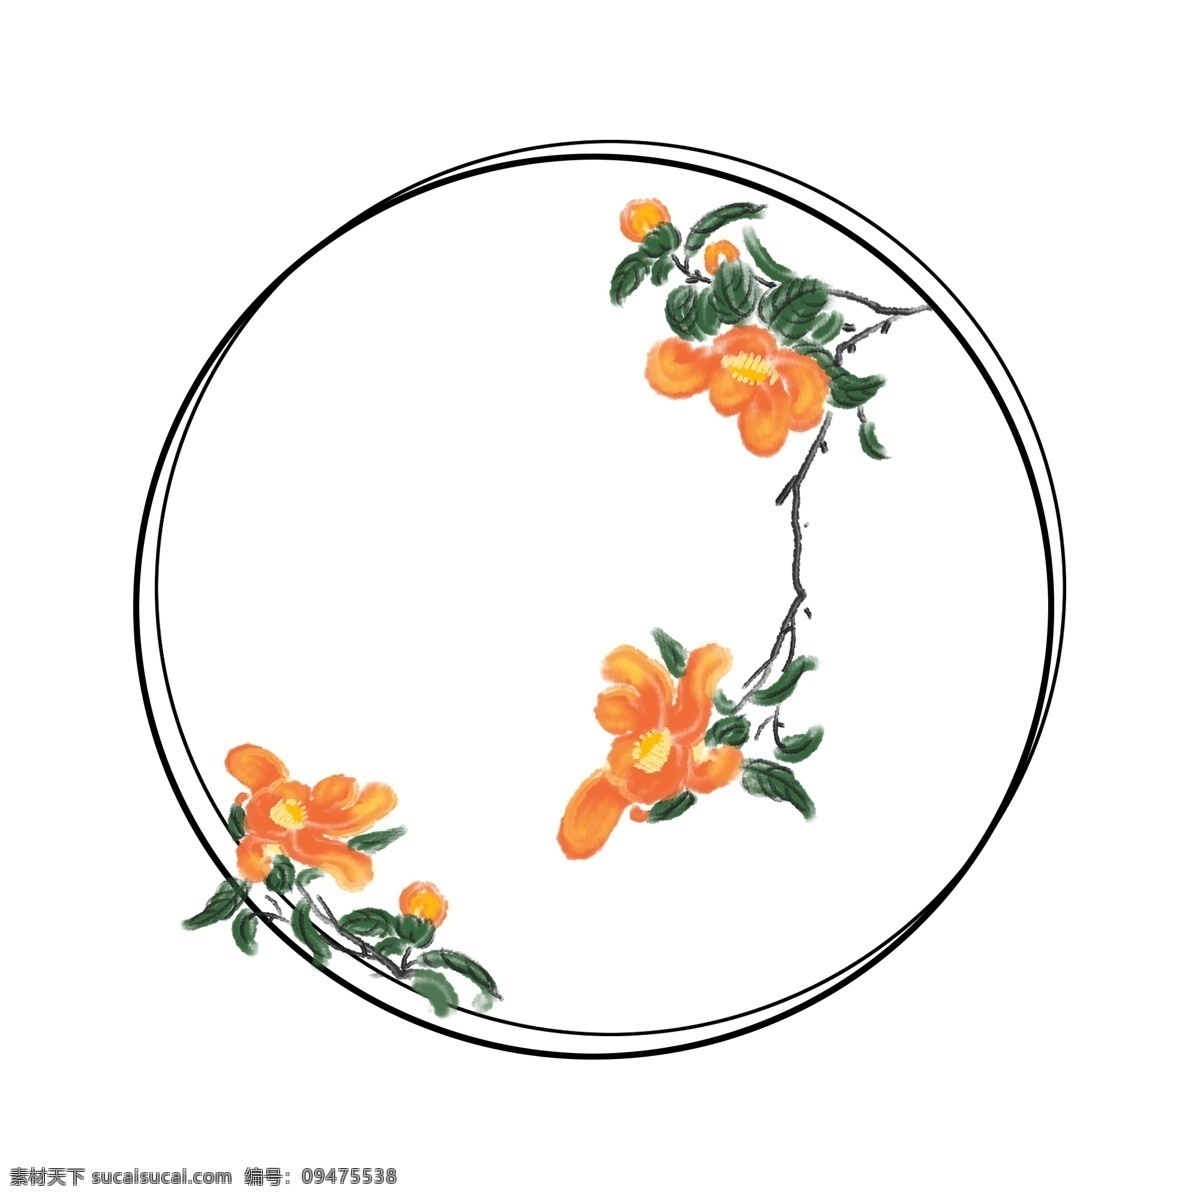 手绘 古风 石榴花 边框 黄色的花朵 绽放的鲜花 盛开的鲜花 手绘花朵边框 圆形的边框 创意古风边框